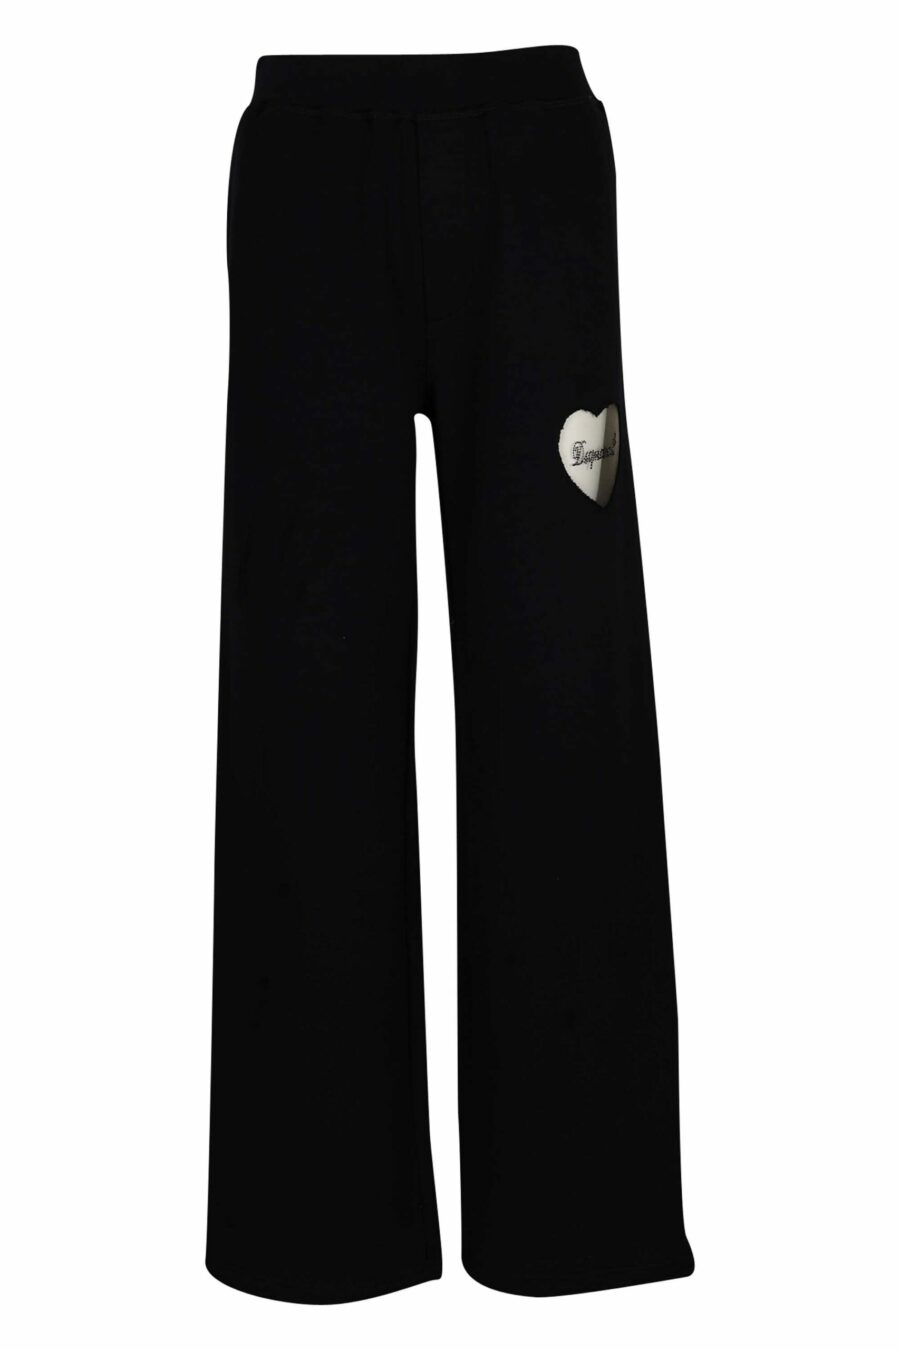 Pantalon noir avec logo en forme de cœur transparent - 8054148304249 échelonné